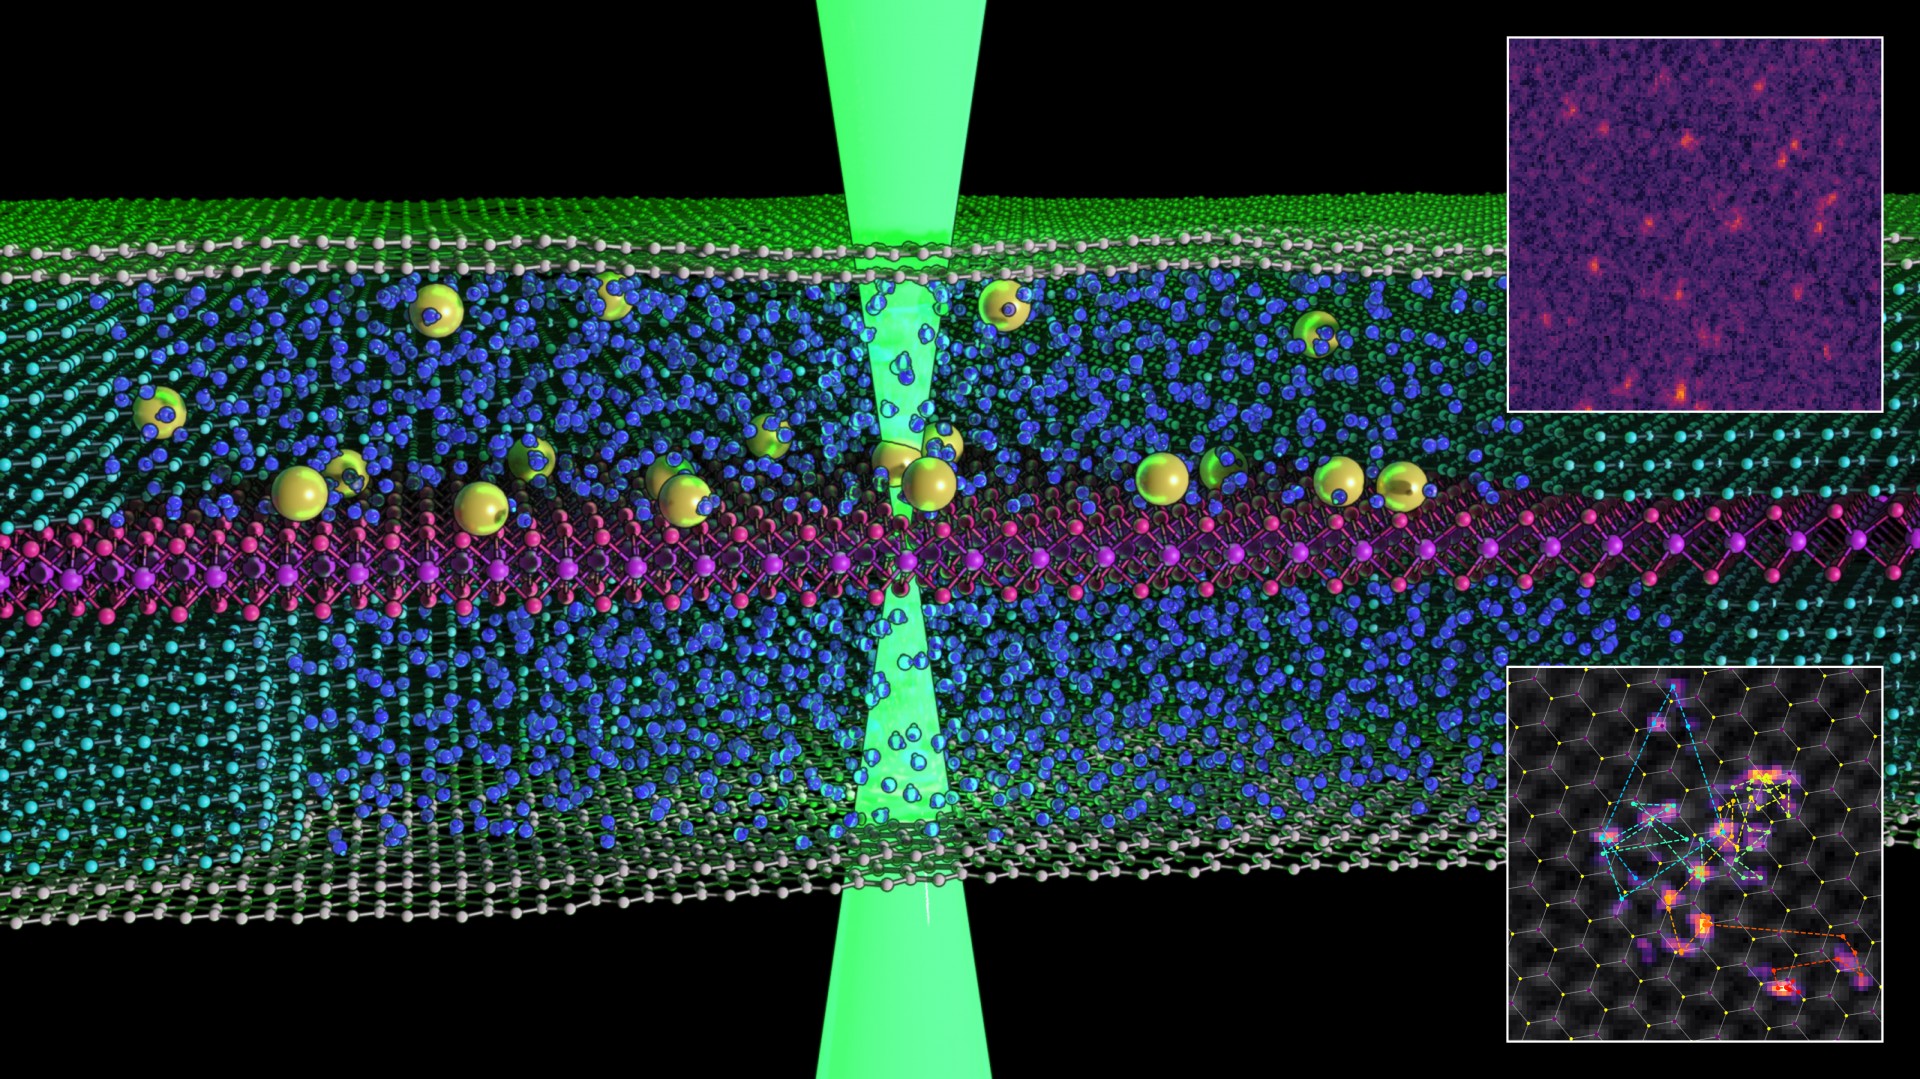 Pela primeira vez, cientistas registraram imagens de átomos nadando em líquido  (Foto: The University Of Manchester )